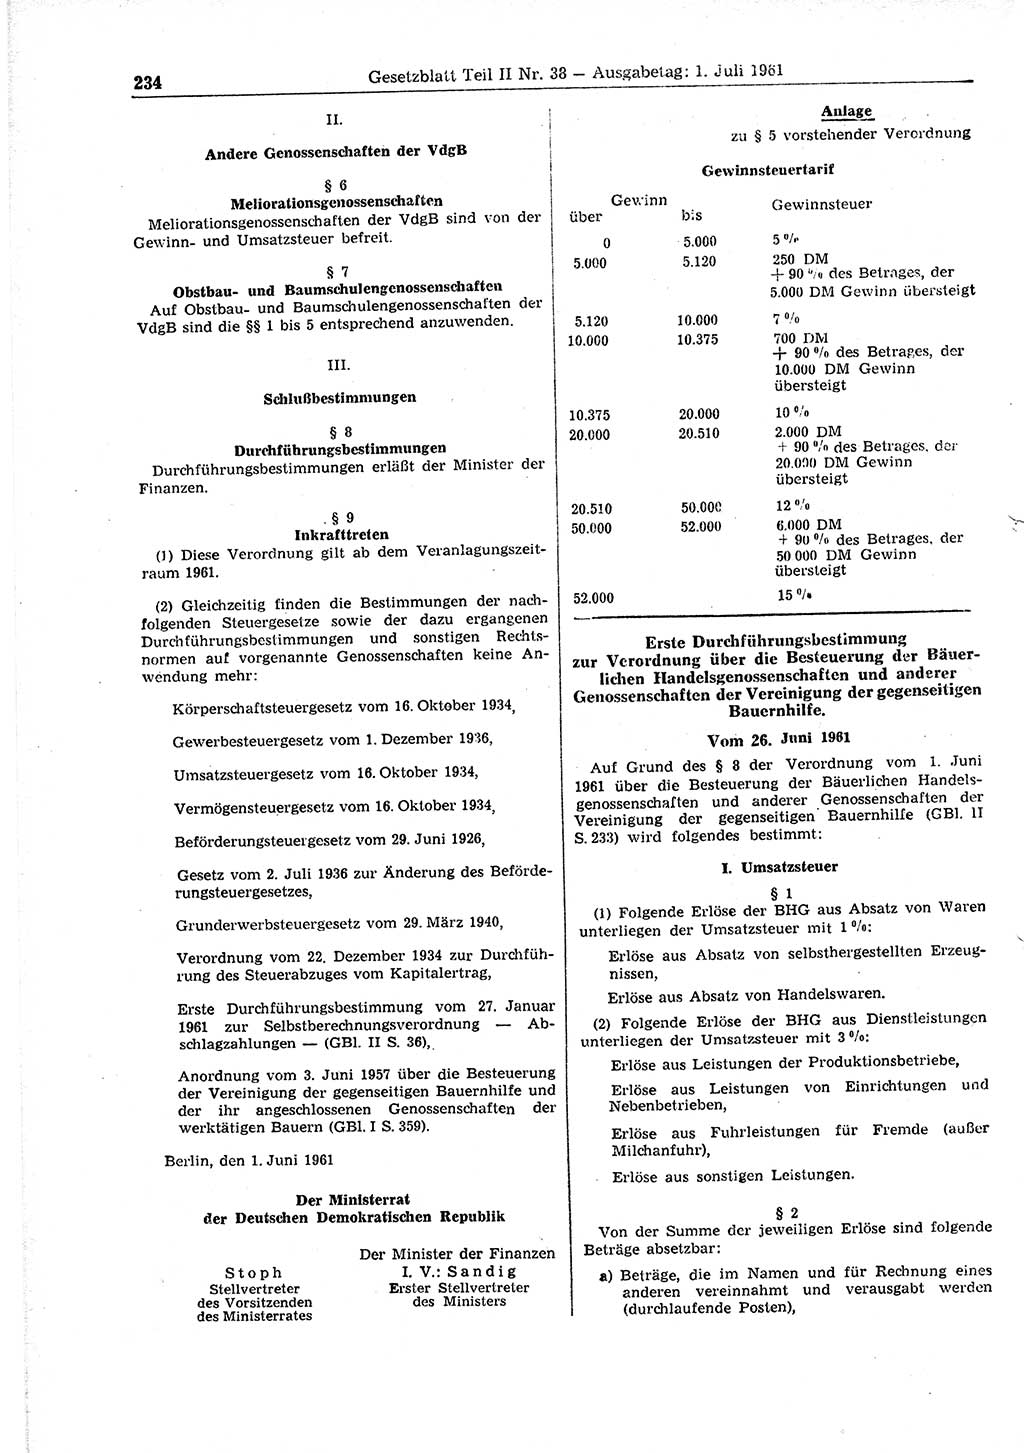 Gesetzblatt (GBl.) der Deutschen Demokratischen Republik (DDR) Teil ⅠⅠ 1961, Seite 234 (GBl. DDR ⅠⅠ 1961, S. 234)